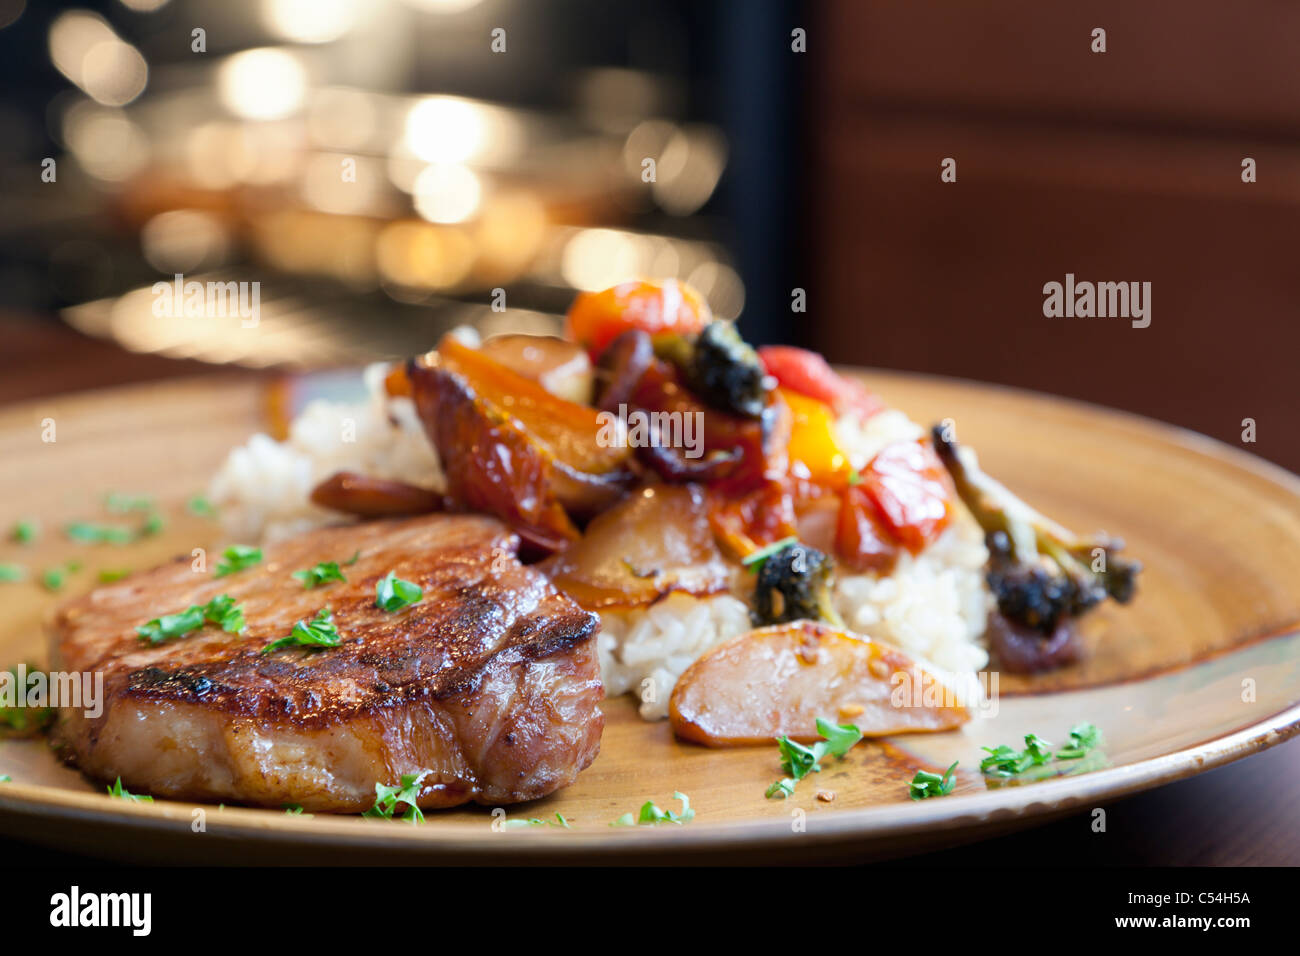 La carne de cerdo, arroz y verduras asadas Foto de stock